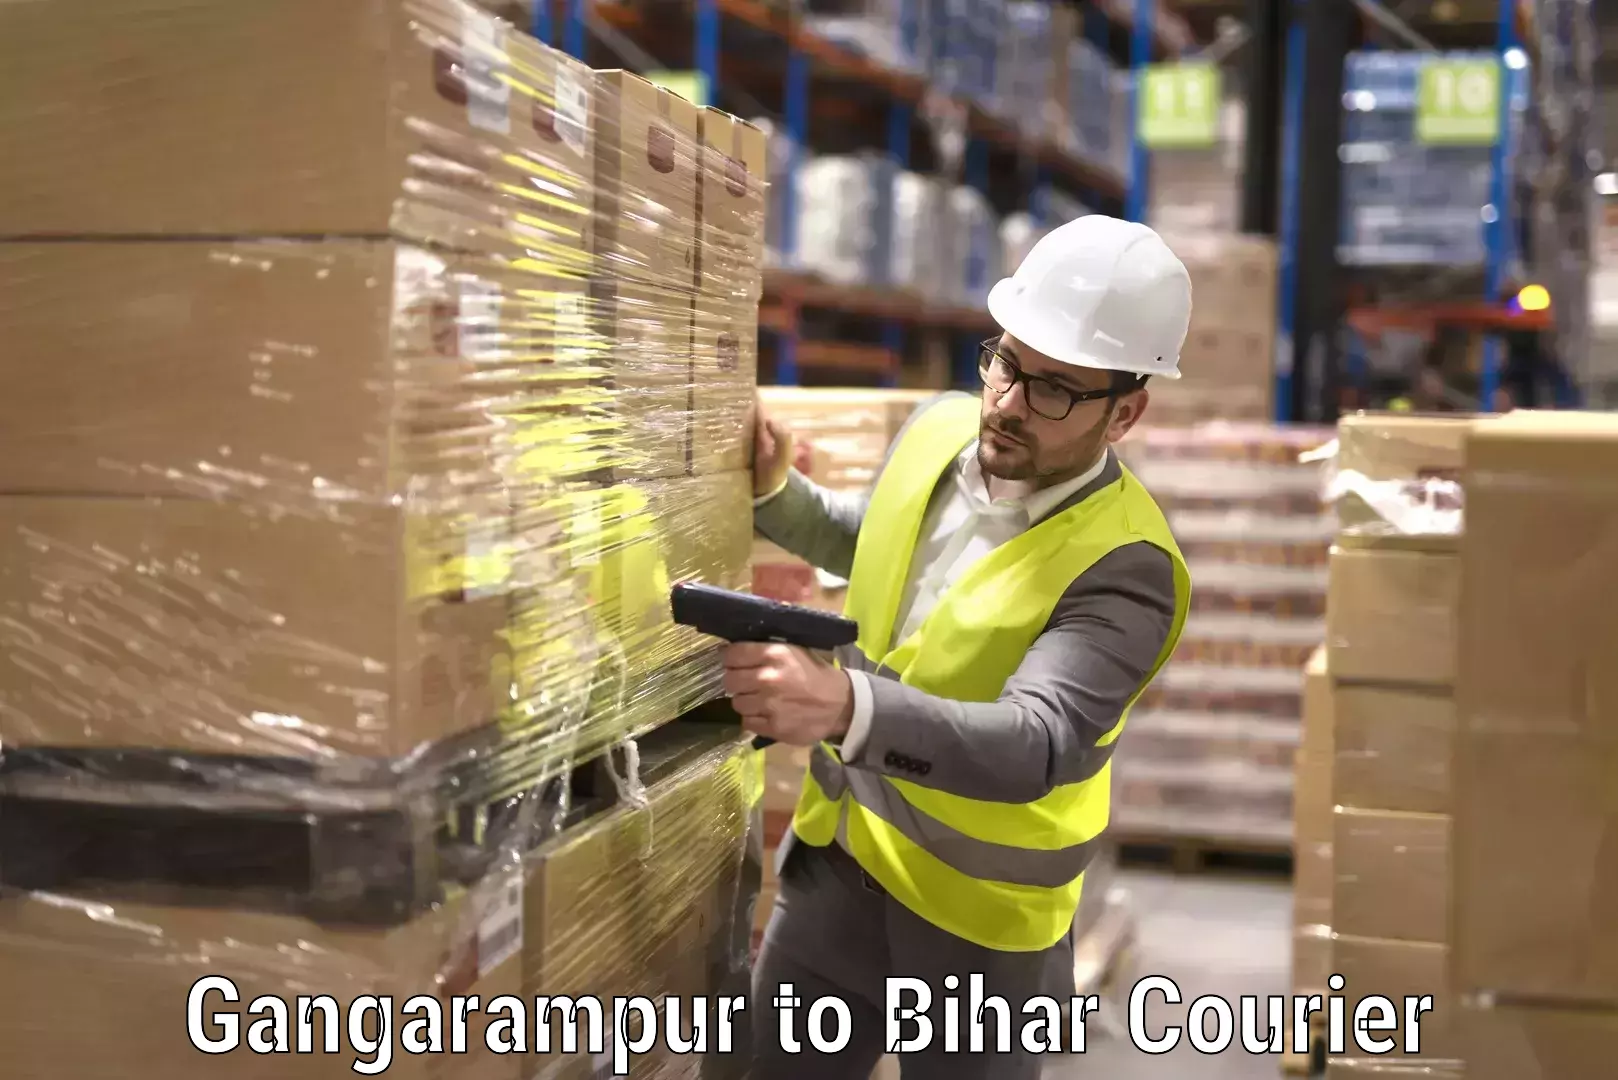 Furniture moving services Gangarampur to Bihar